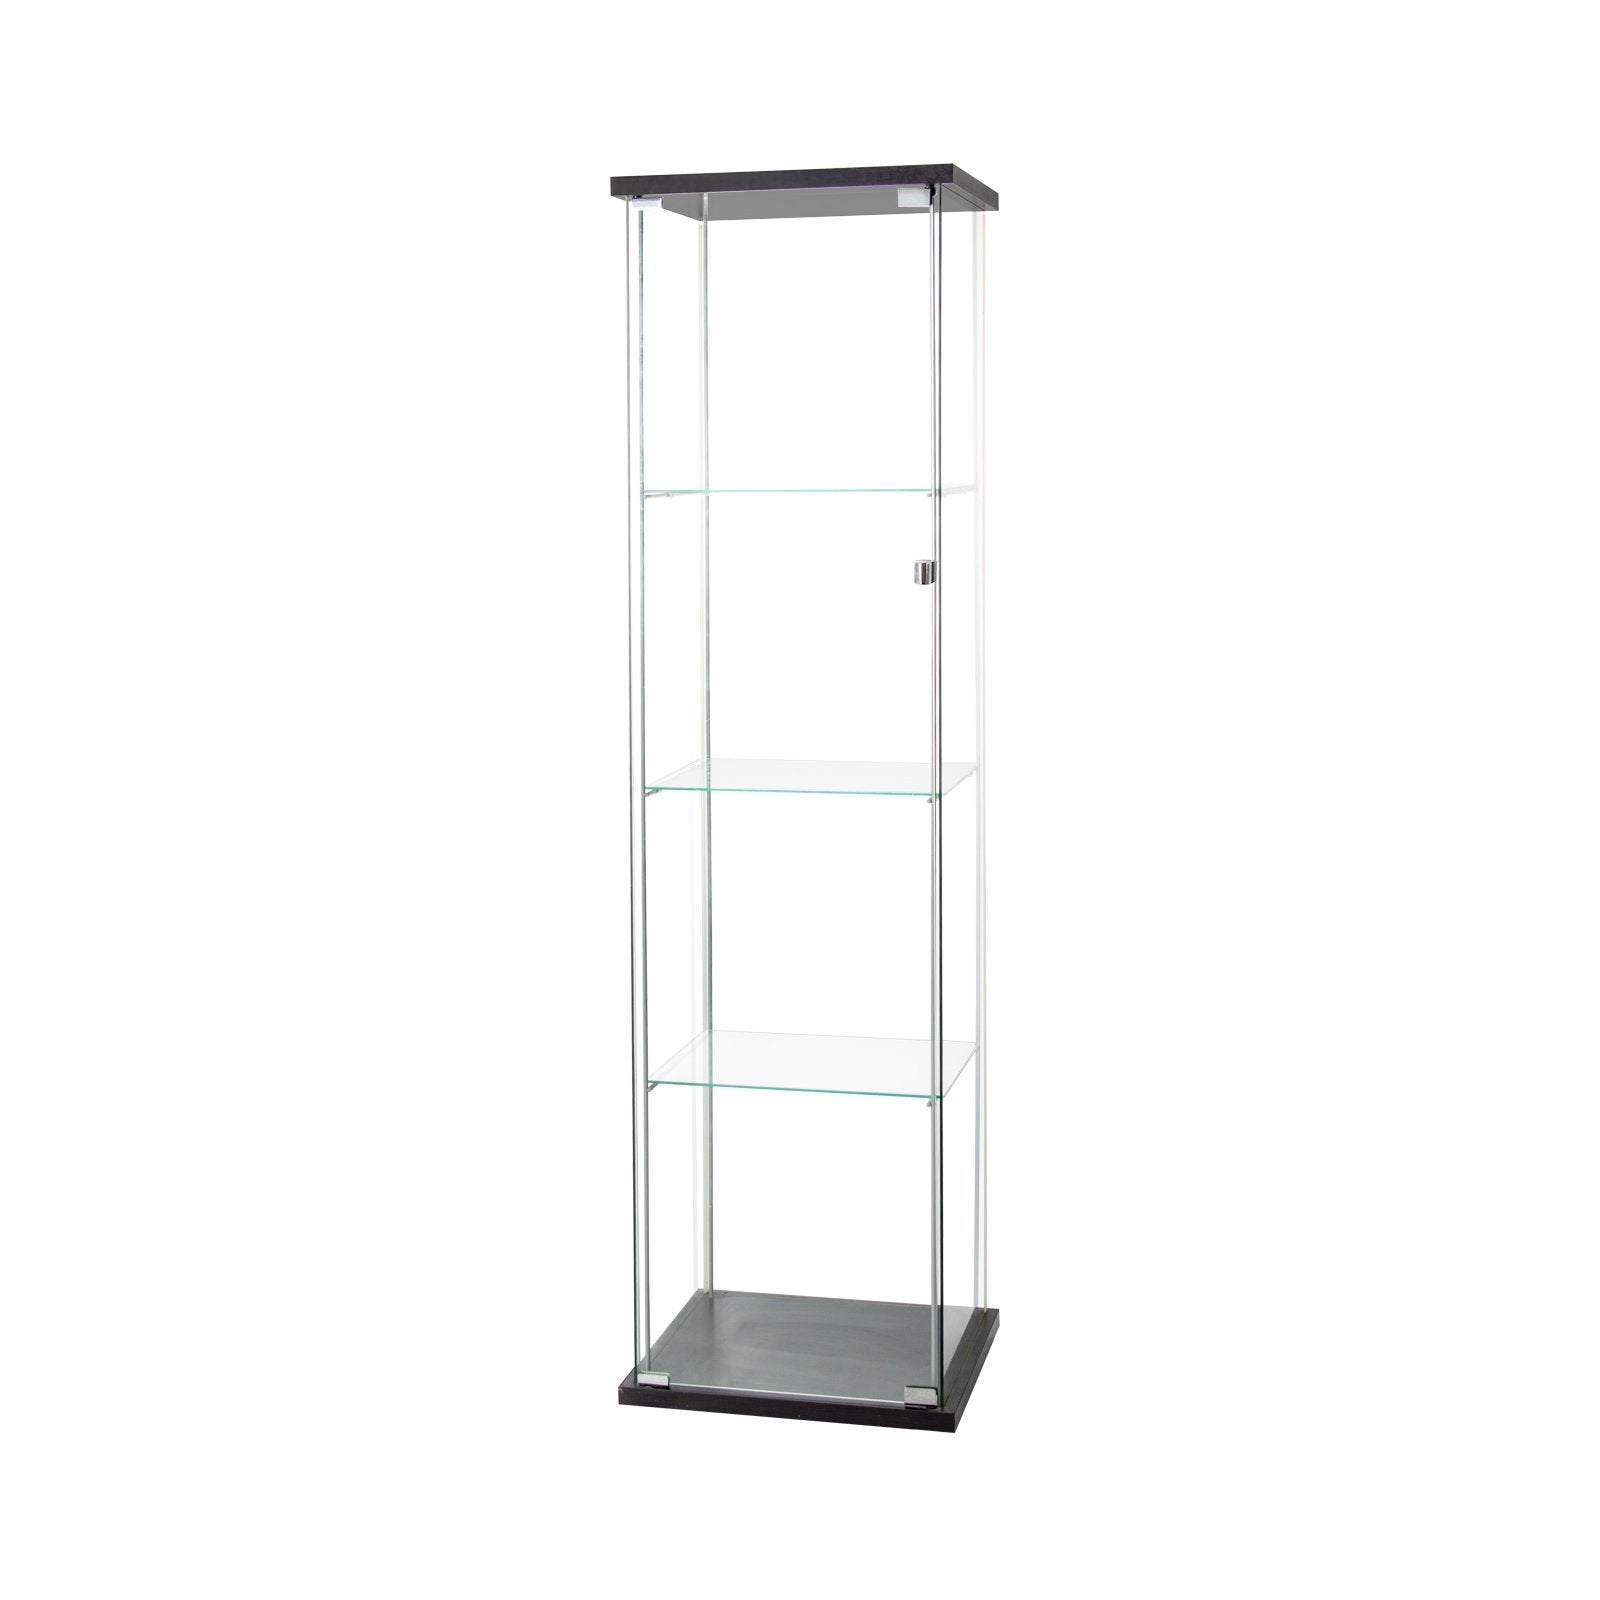 Glass Display Cabinet 4 Shelves with Door, Floor Standing Curio Bookshelf for Living Room Bedroom Office, 64" x 17"x 14.5"-Boyel Living